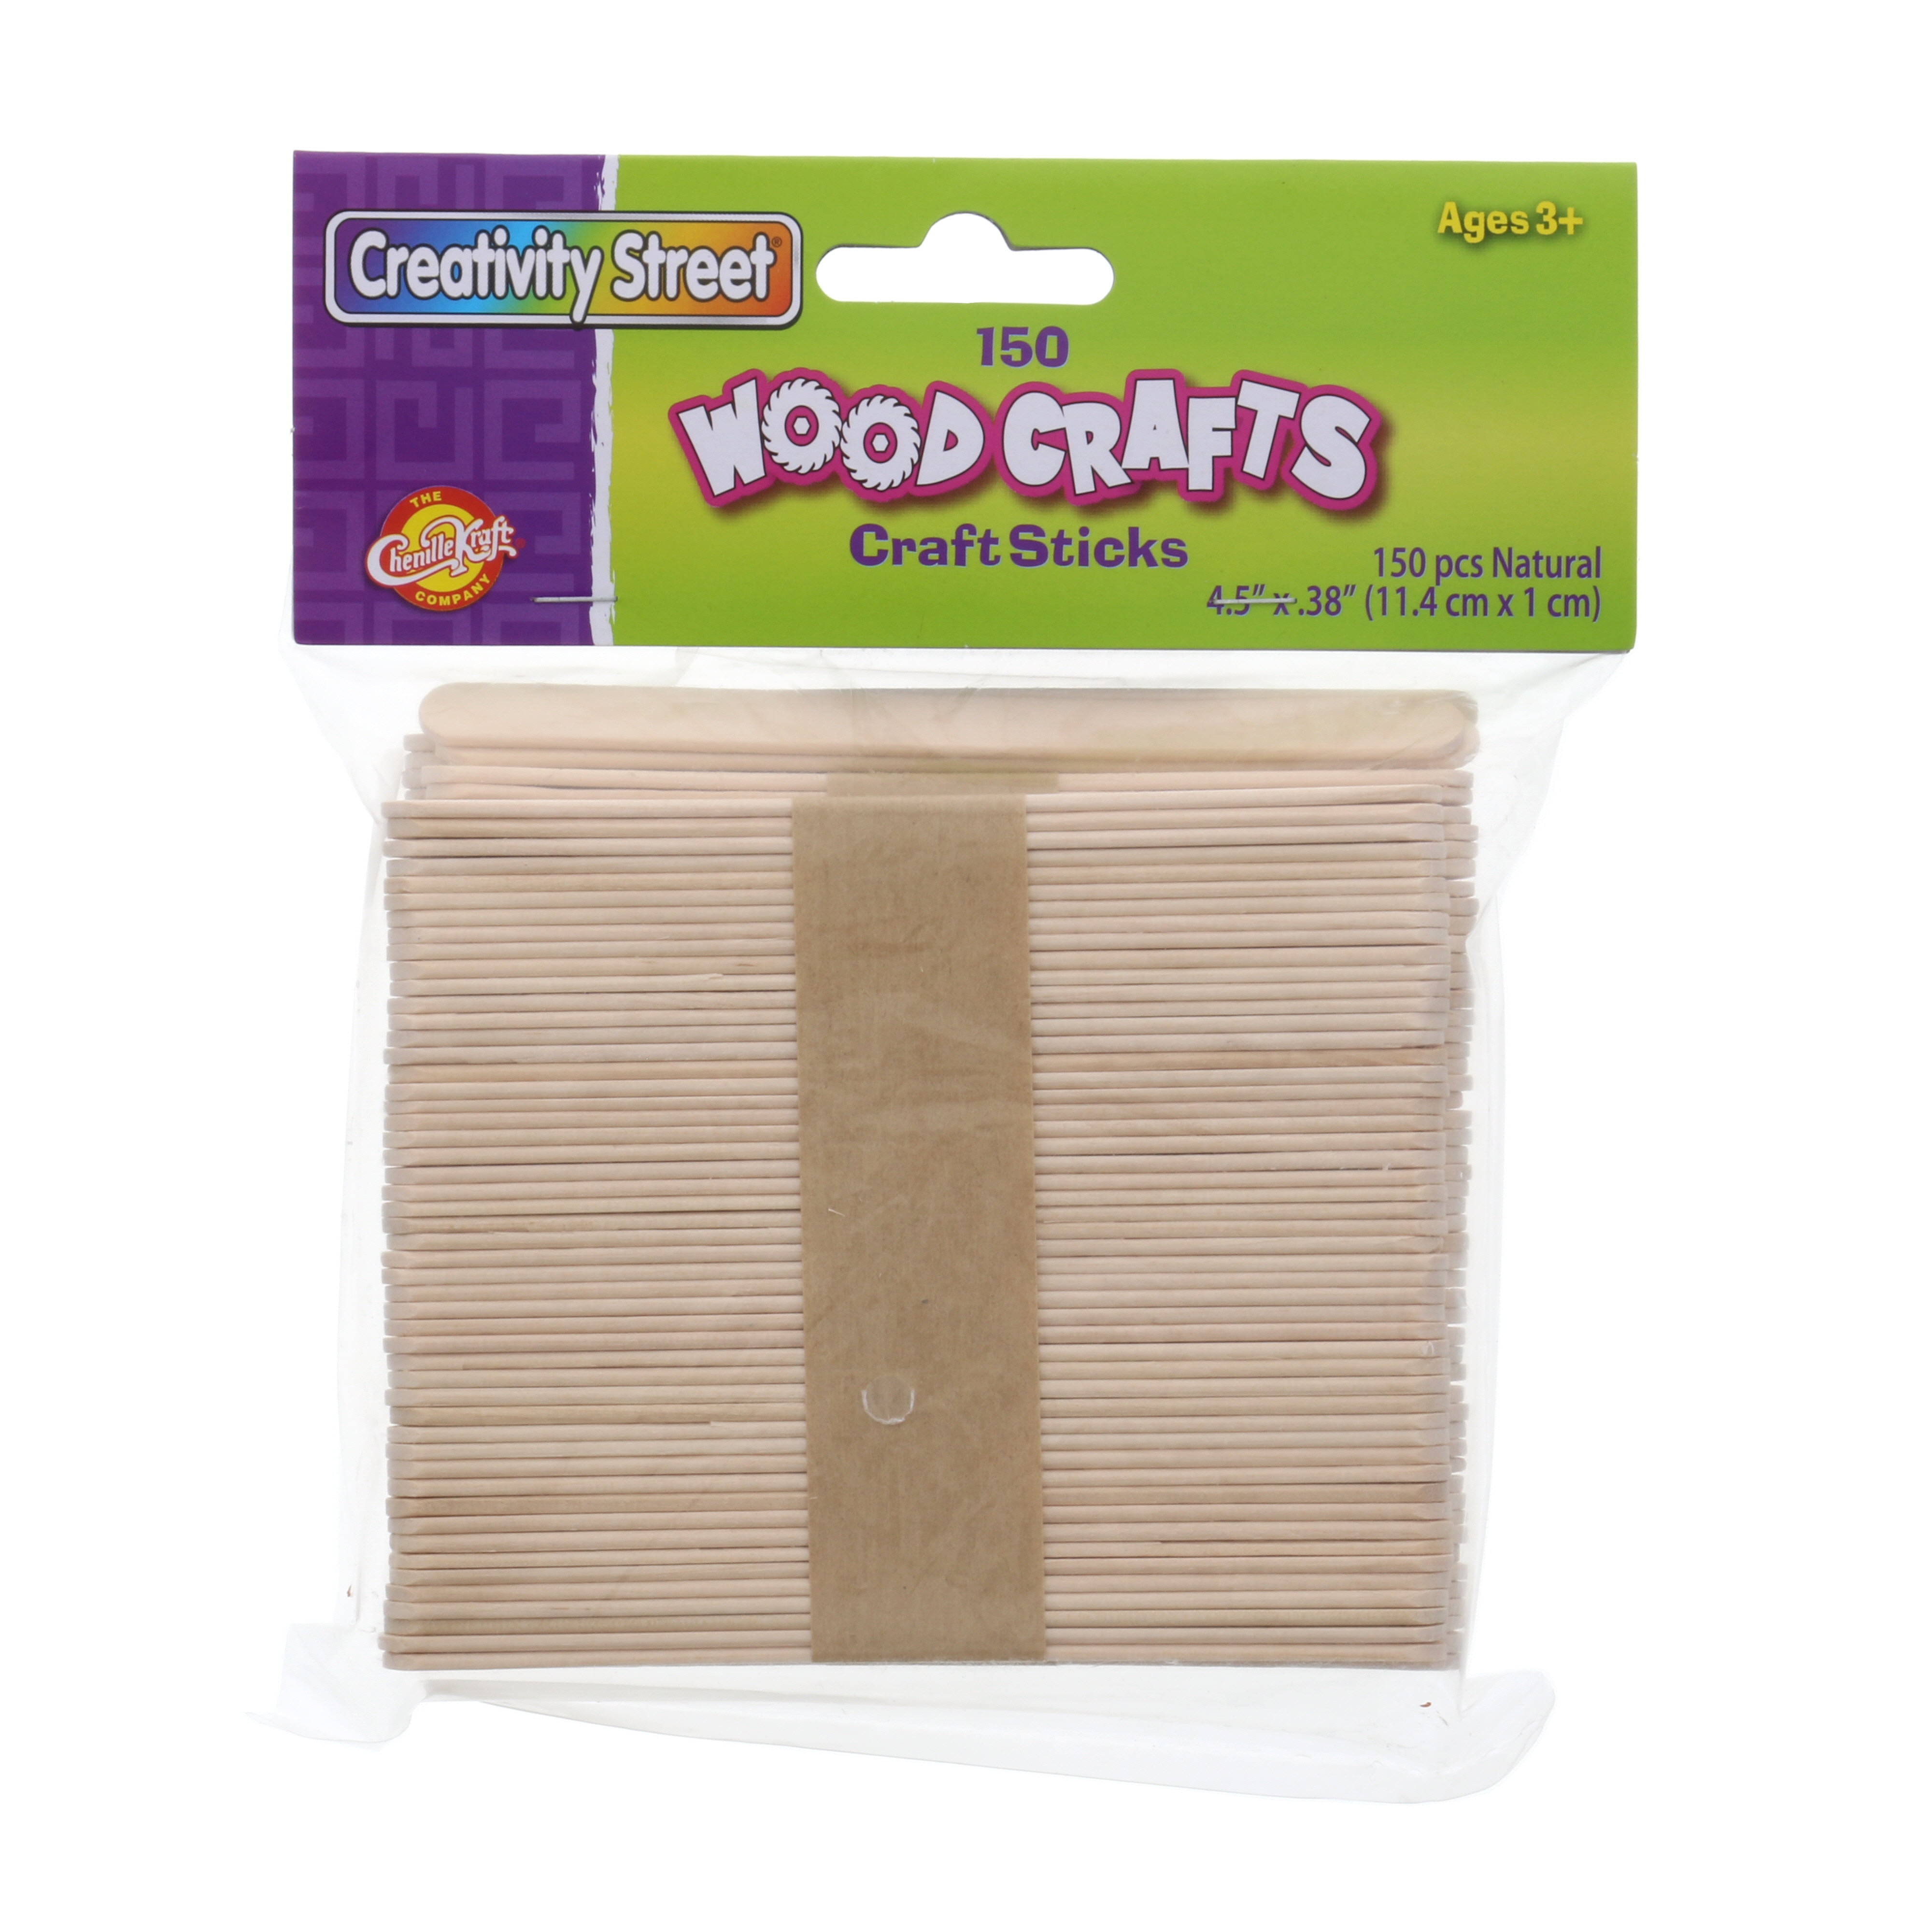 3000 Craft Sticks Wooden Colorful Matchsticks Matches Match Splints Art  Projects 